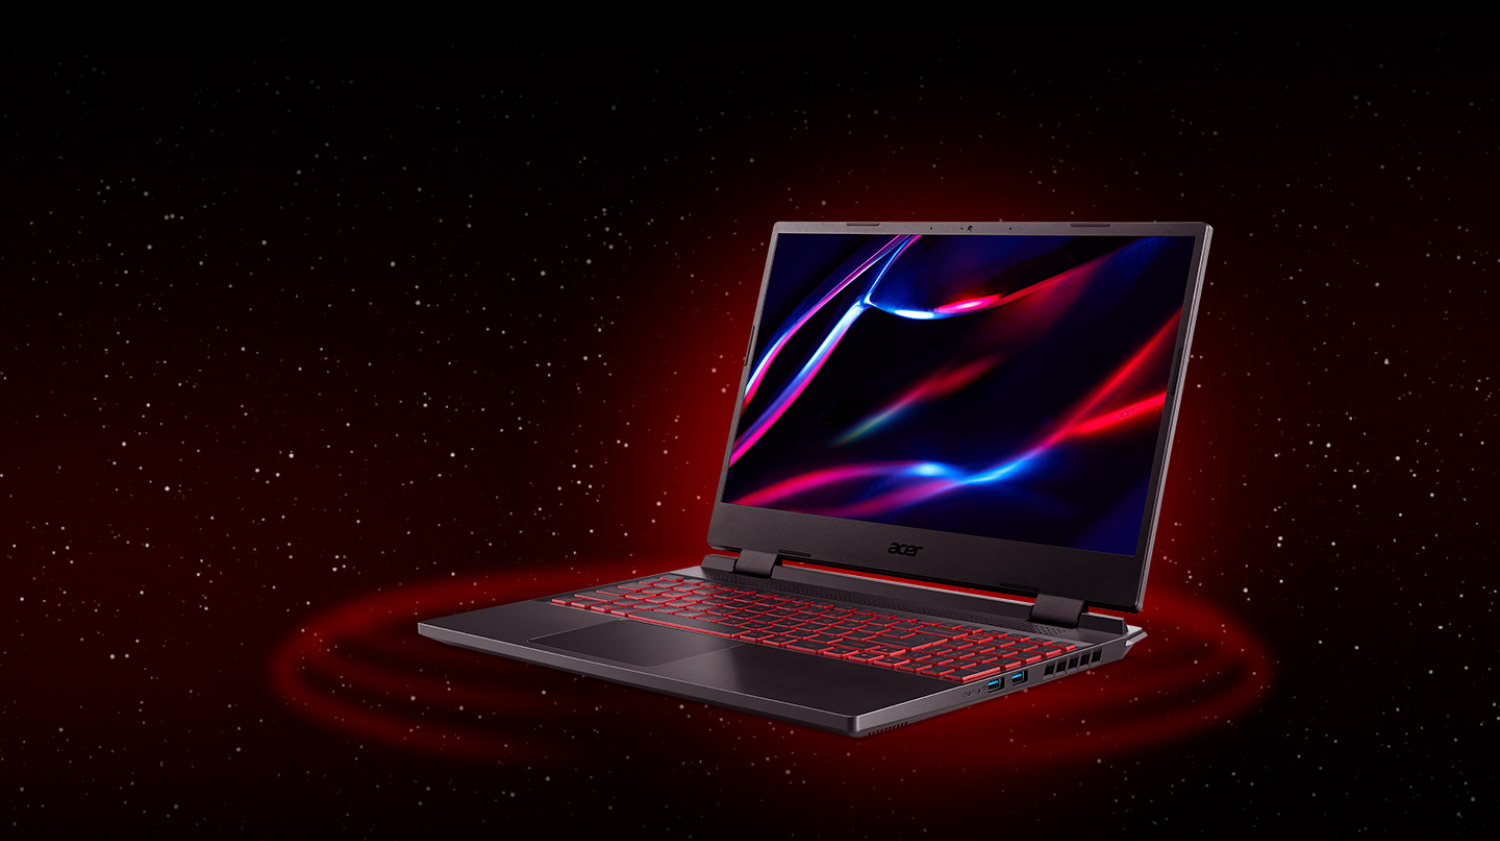 Note Acer Nitro 5,  lateral esquerda, teclado iluminado vermelho, desenho na tela em azul e vermelho, céu estrelado ao fundo.